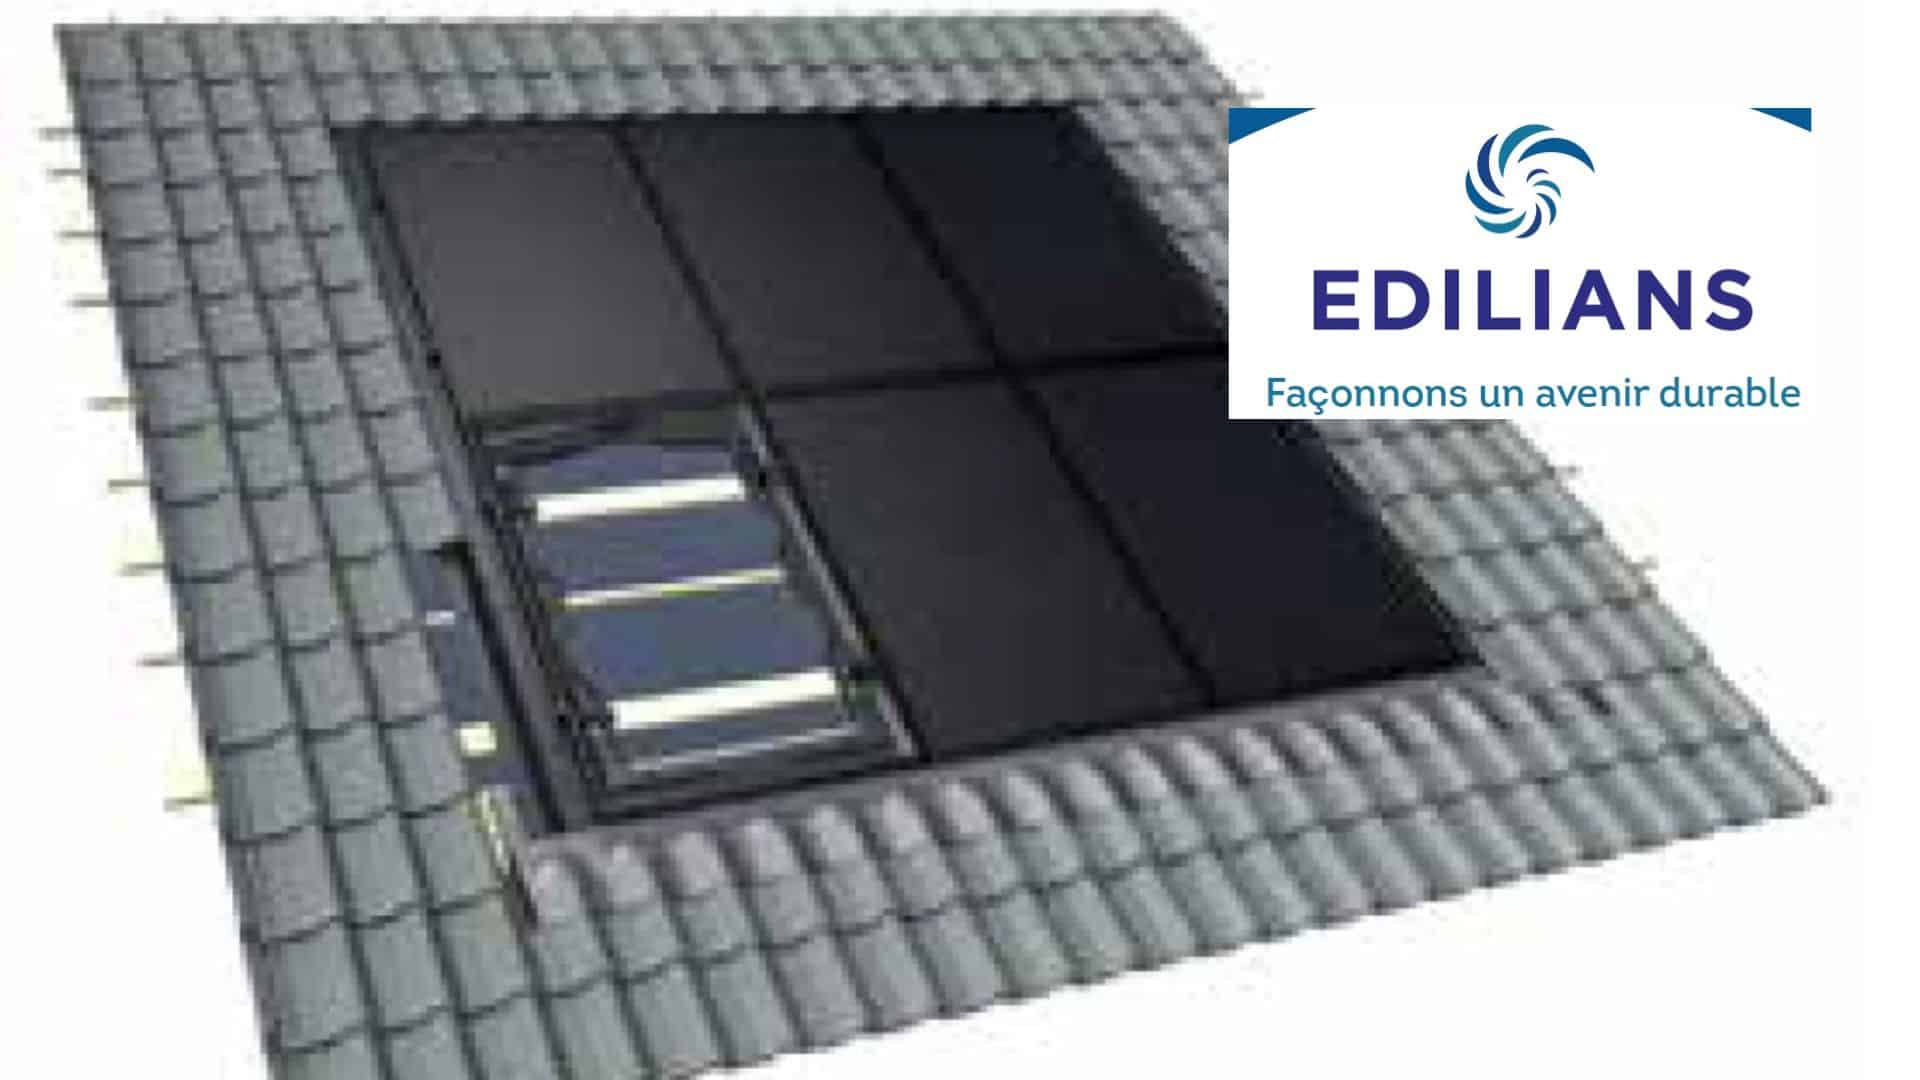 EDILIANS  étend sa gamme de produits photovoltaïques et dispose aujourd’hui d’une offre complète pour répondre à toutes les configurations et tous les styles architecturaux